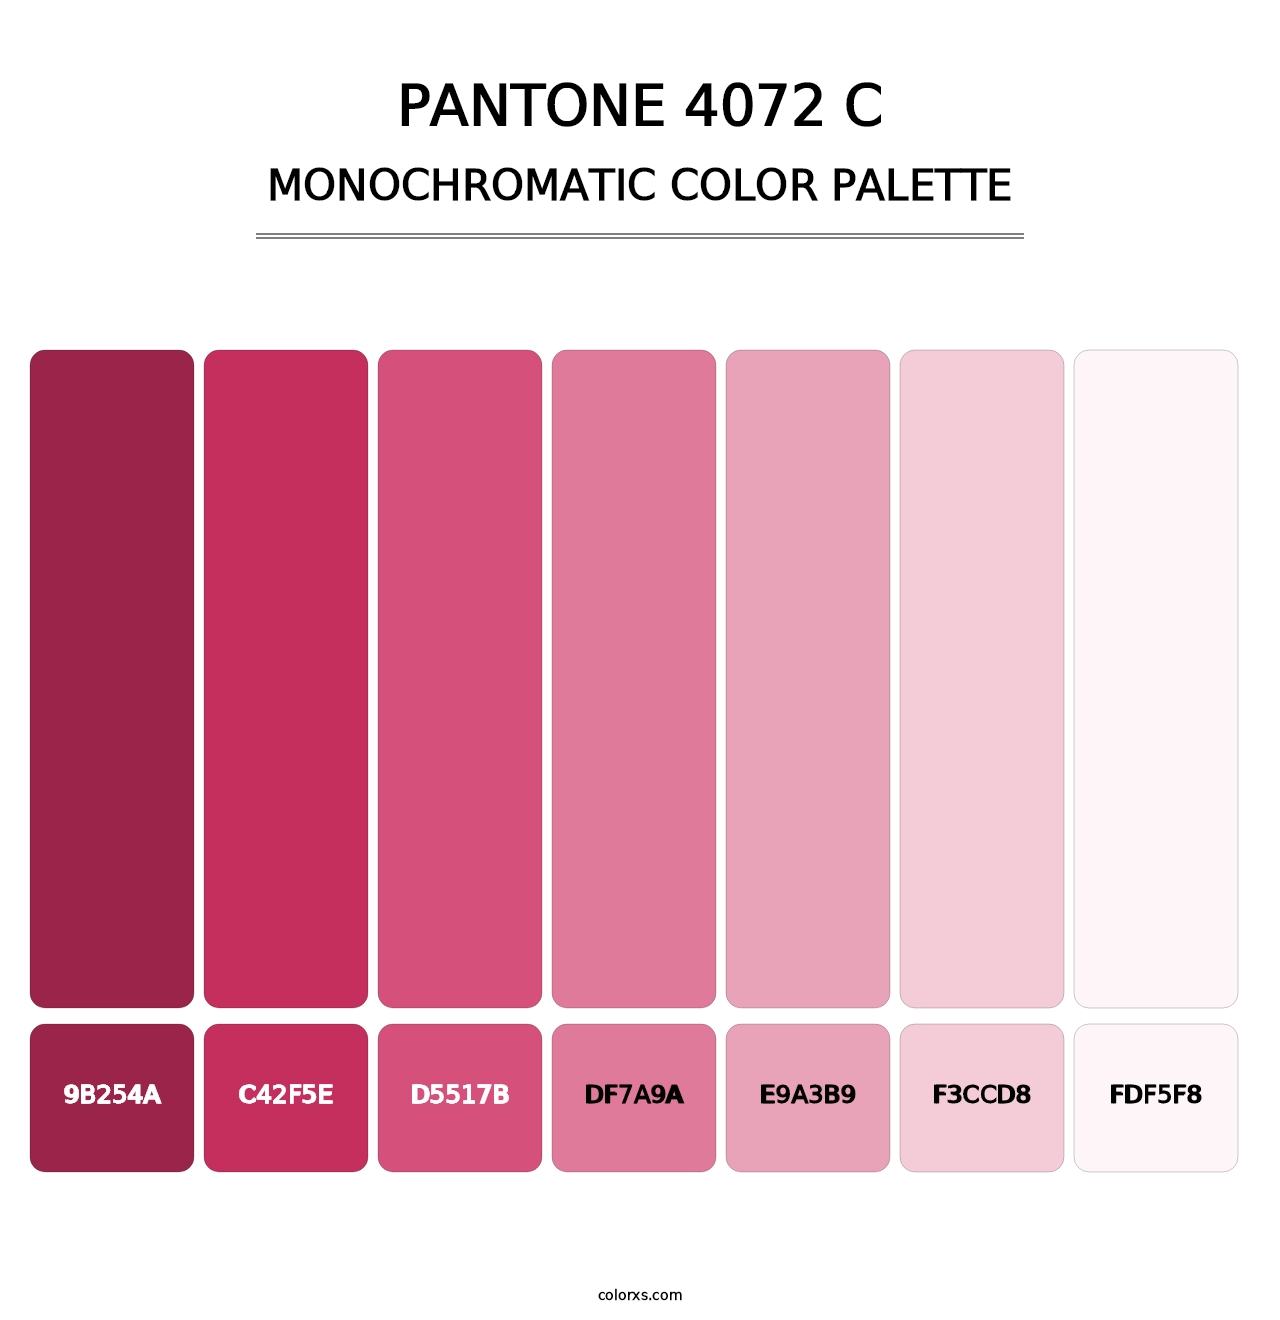 PANTONE 4072 C - Monochromatic Color Palette